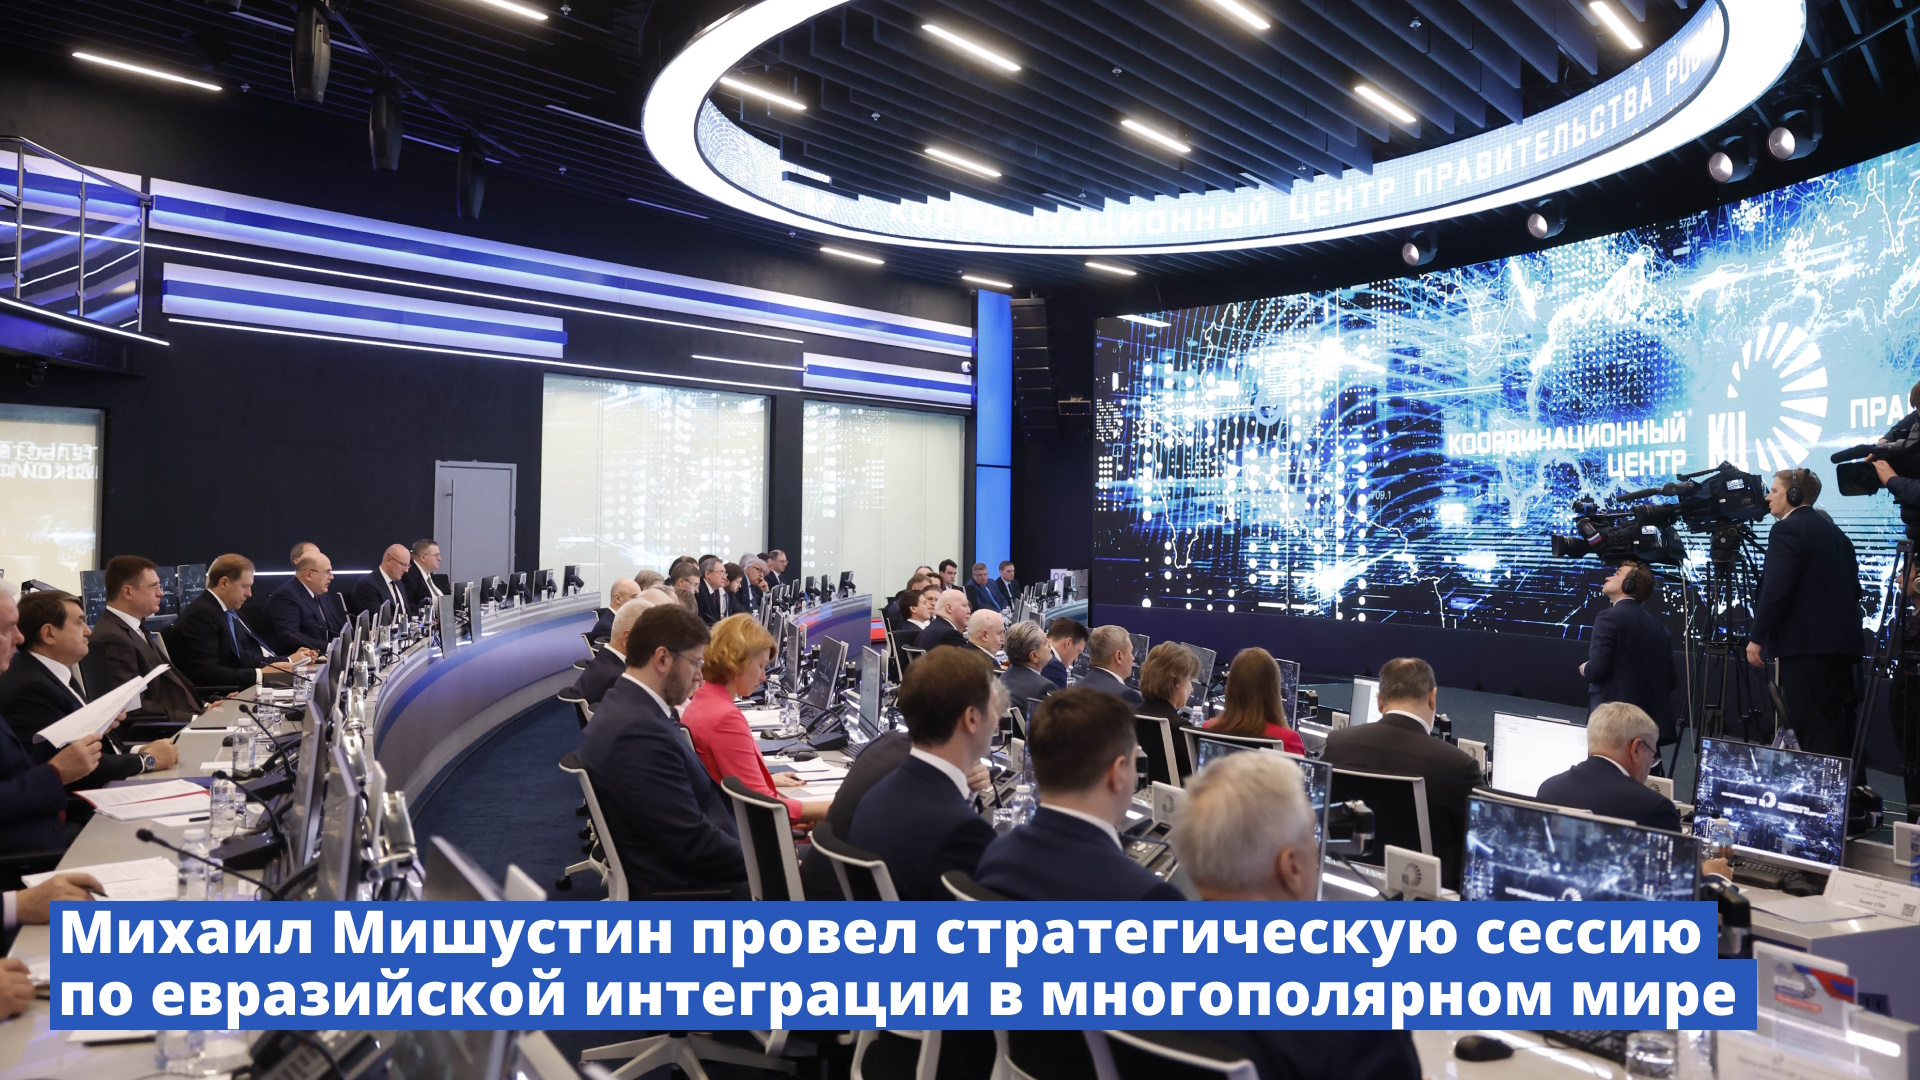 Михаил Мишустин провел стратегическую сессию по евразийской интеграции в многополярном мире